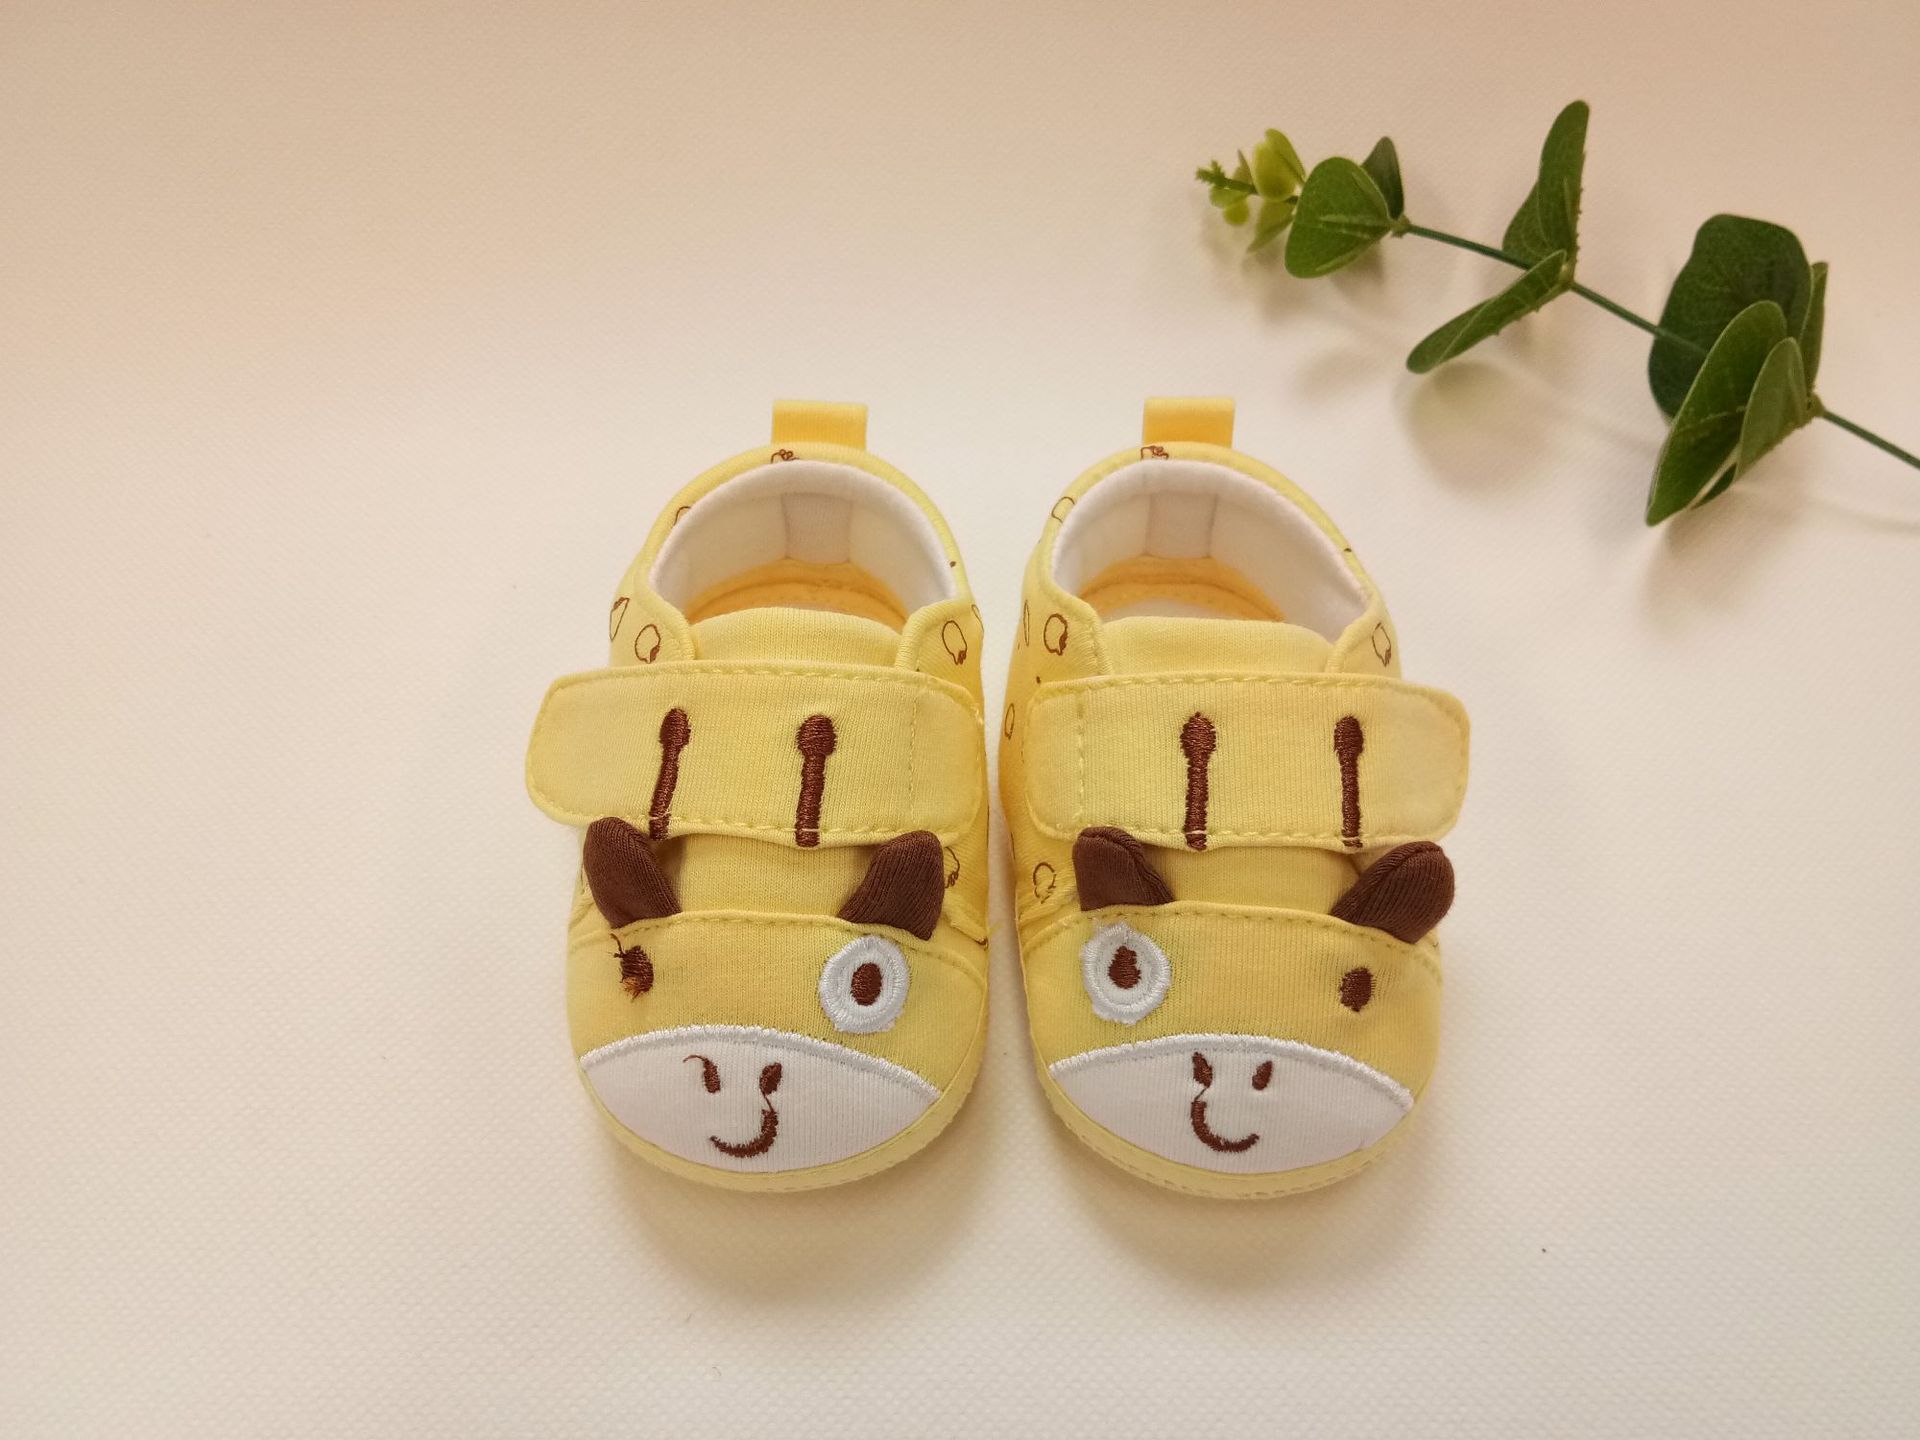 2018新款婴儿秋鞋 魔术贴学步鞋 0-1岁婴儿学步鞋 透气棉布鞋示例图5